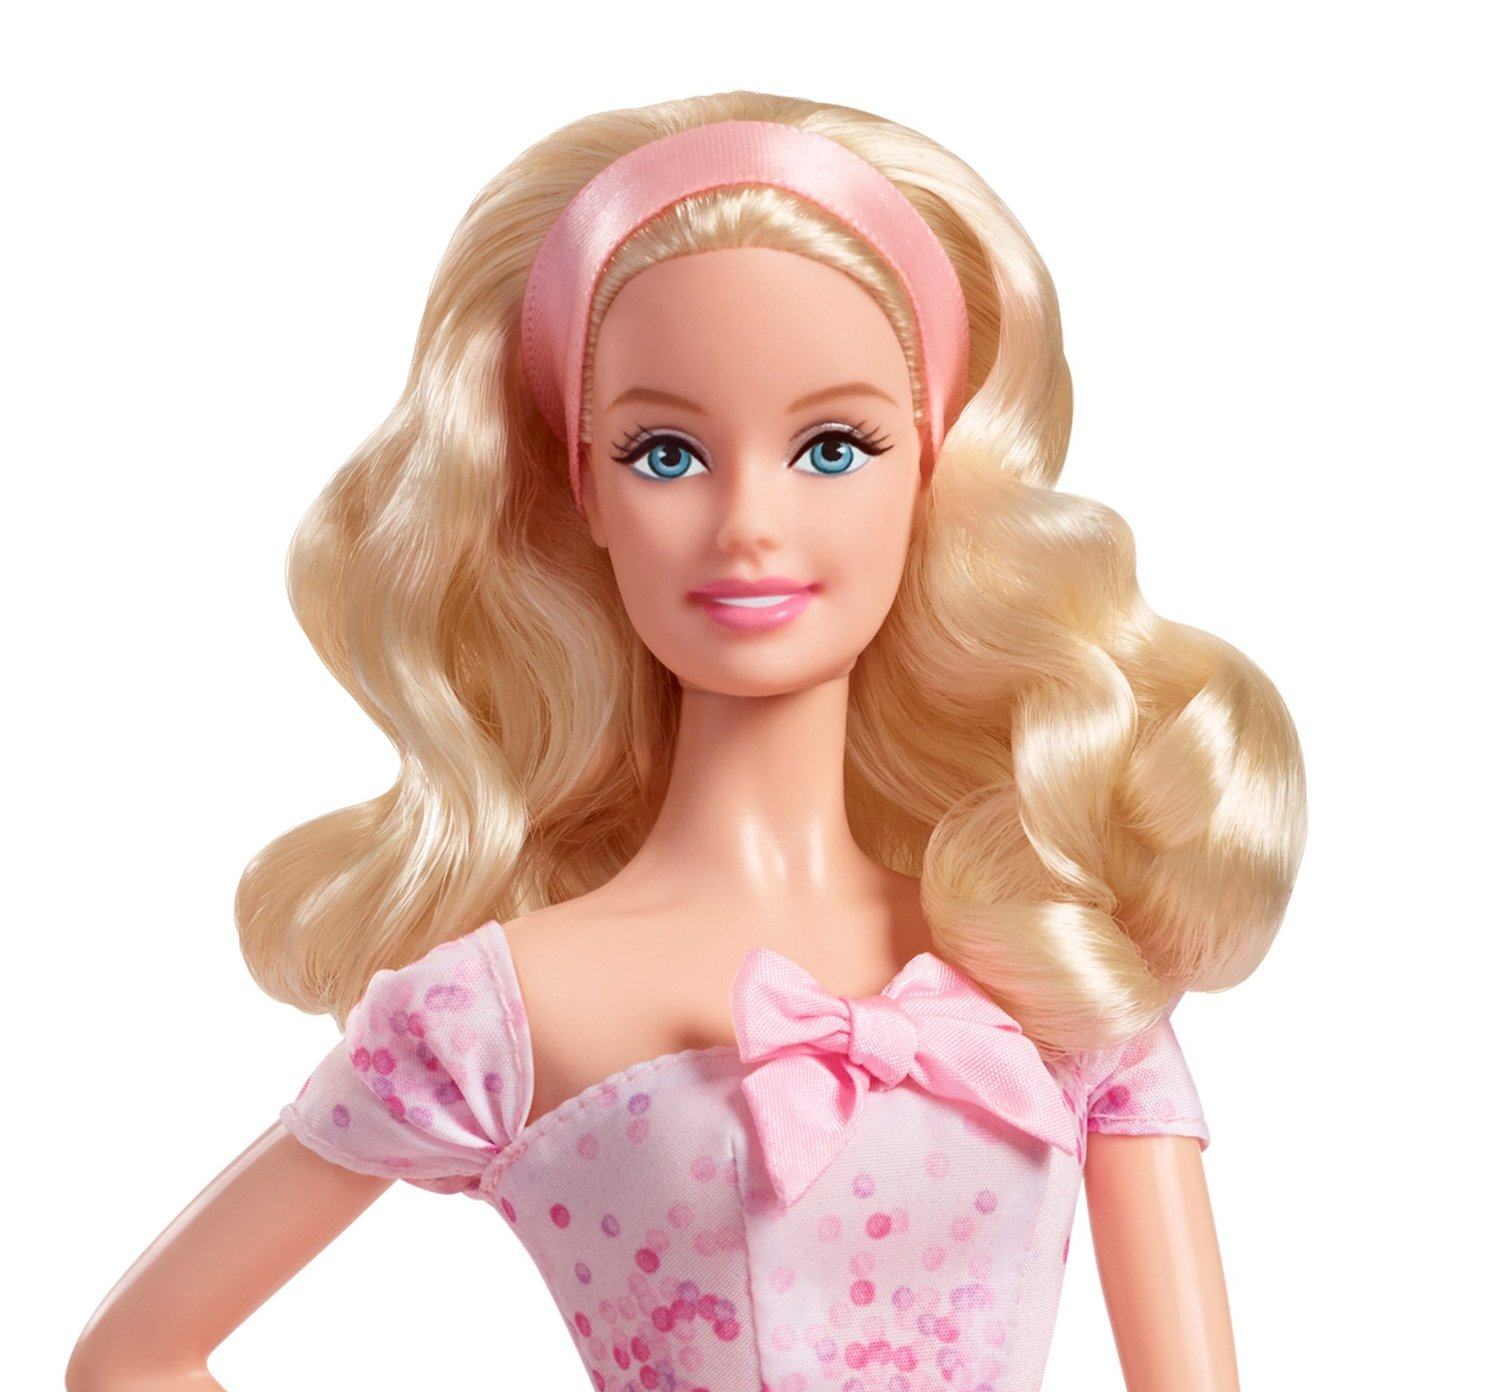 Khuôn mặt xinh đẹp và quyến rũ của búp bê chúc mừng sinh nhật barbie